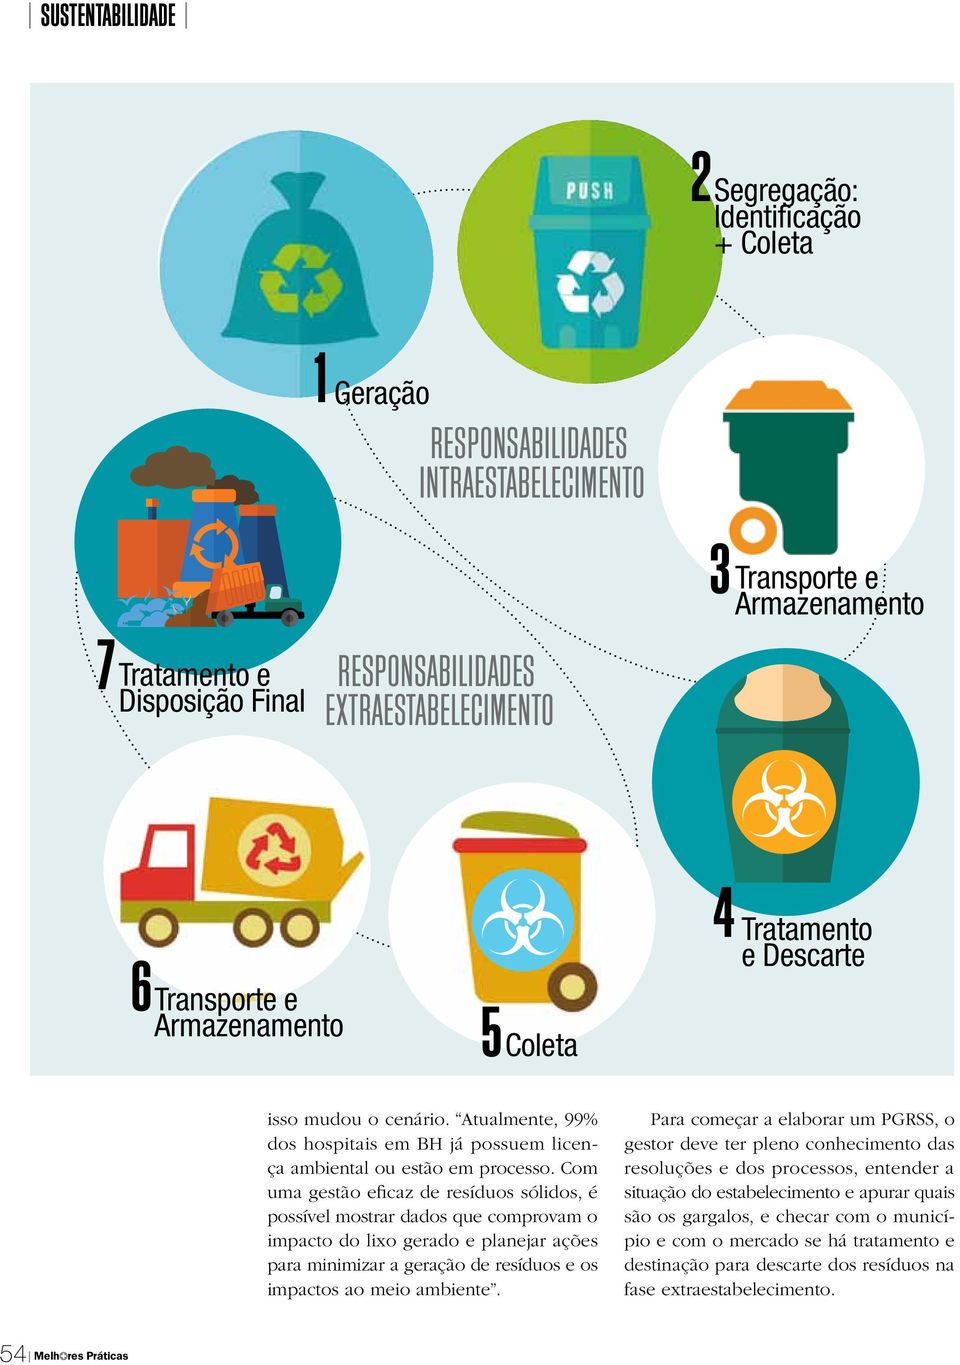 Com uma gestão eficaz de resíduos sólidos, é possível mostrar dados que comprovam o impacto do lixo gerado e planejar ações para minimizar a geração de resíduos e os impactos ao meio ambiente.